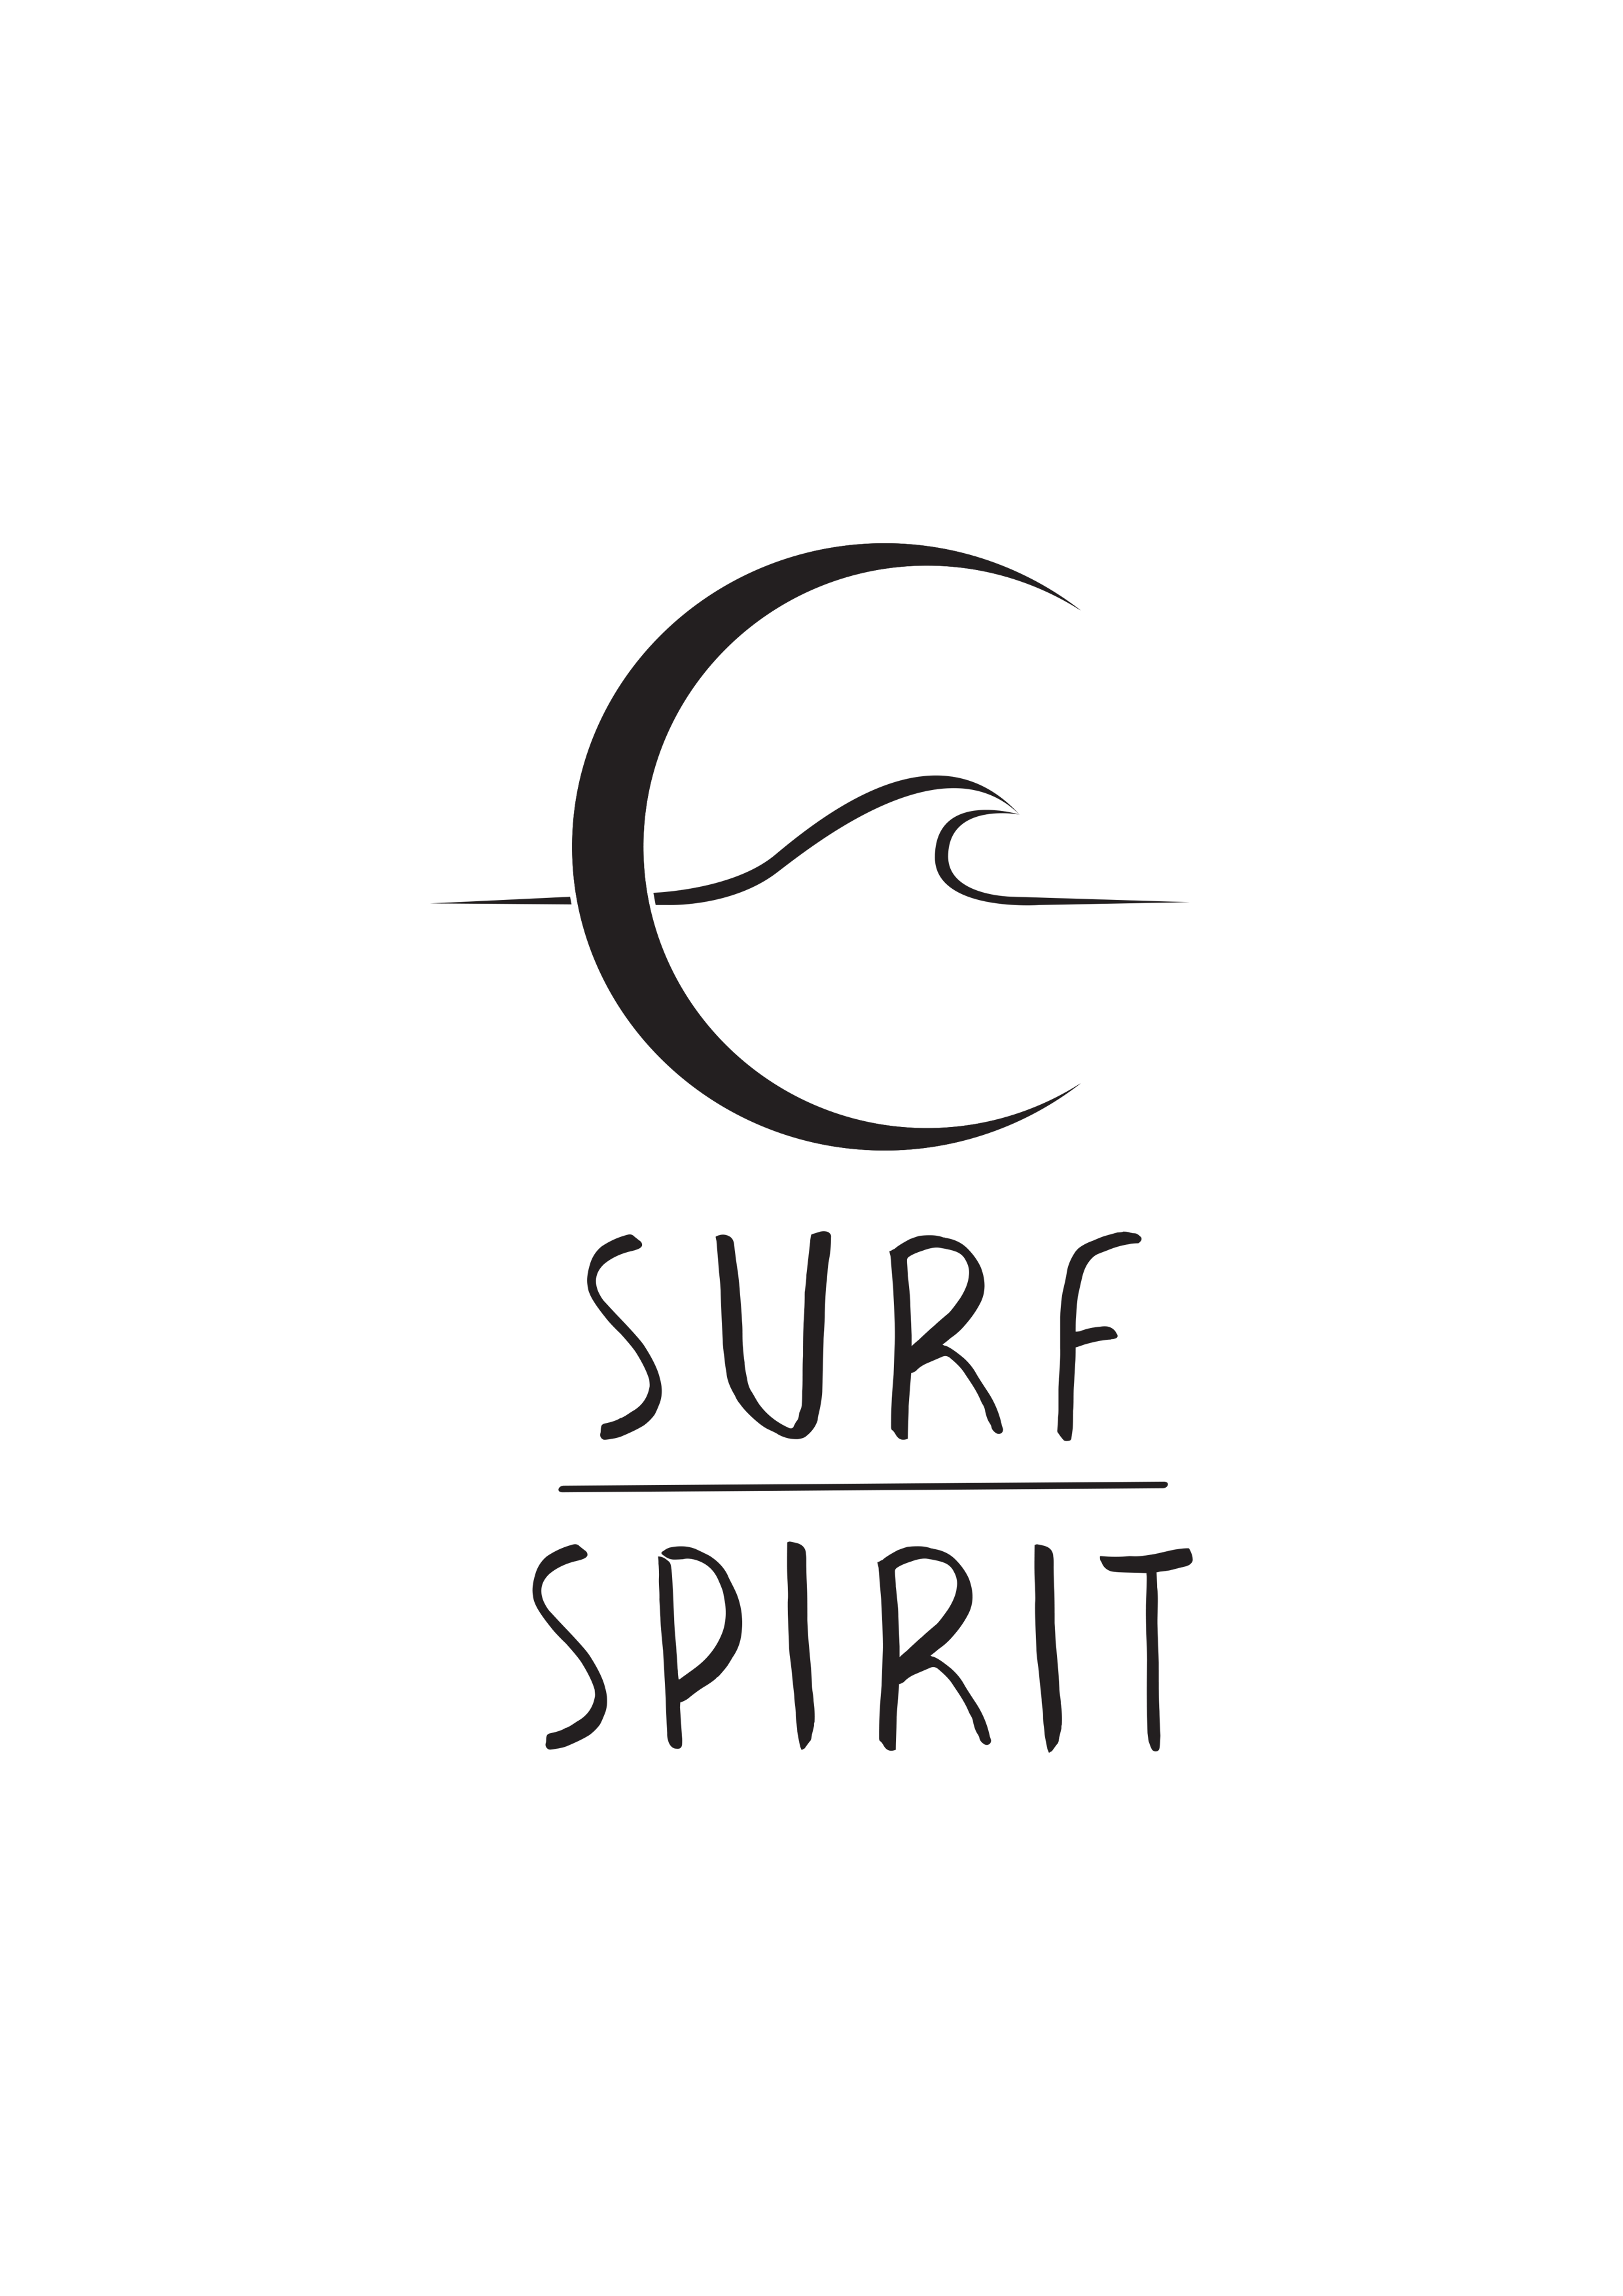 logo-surfspirit-vertical-A4 copy.png